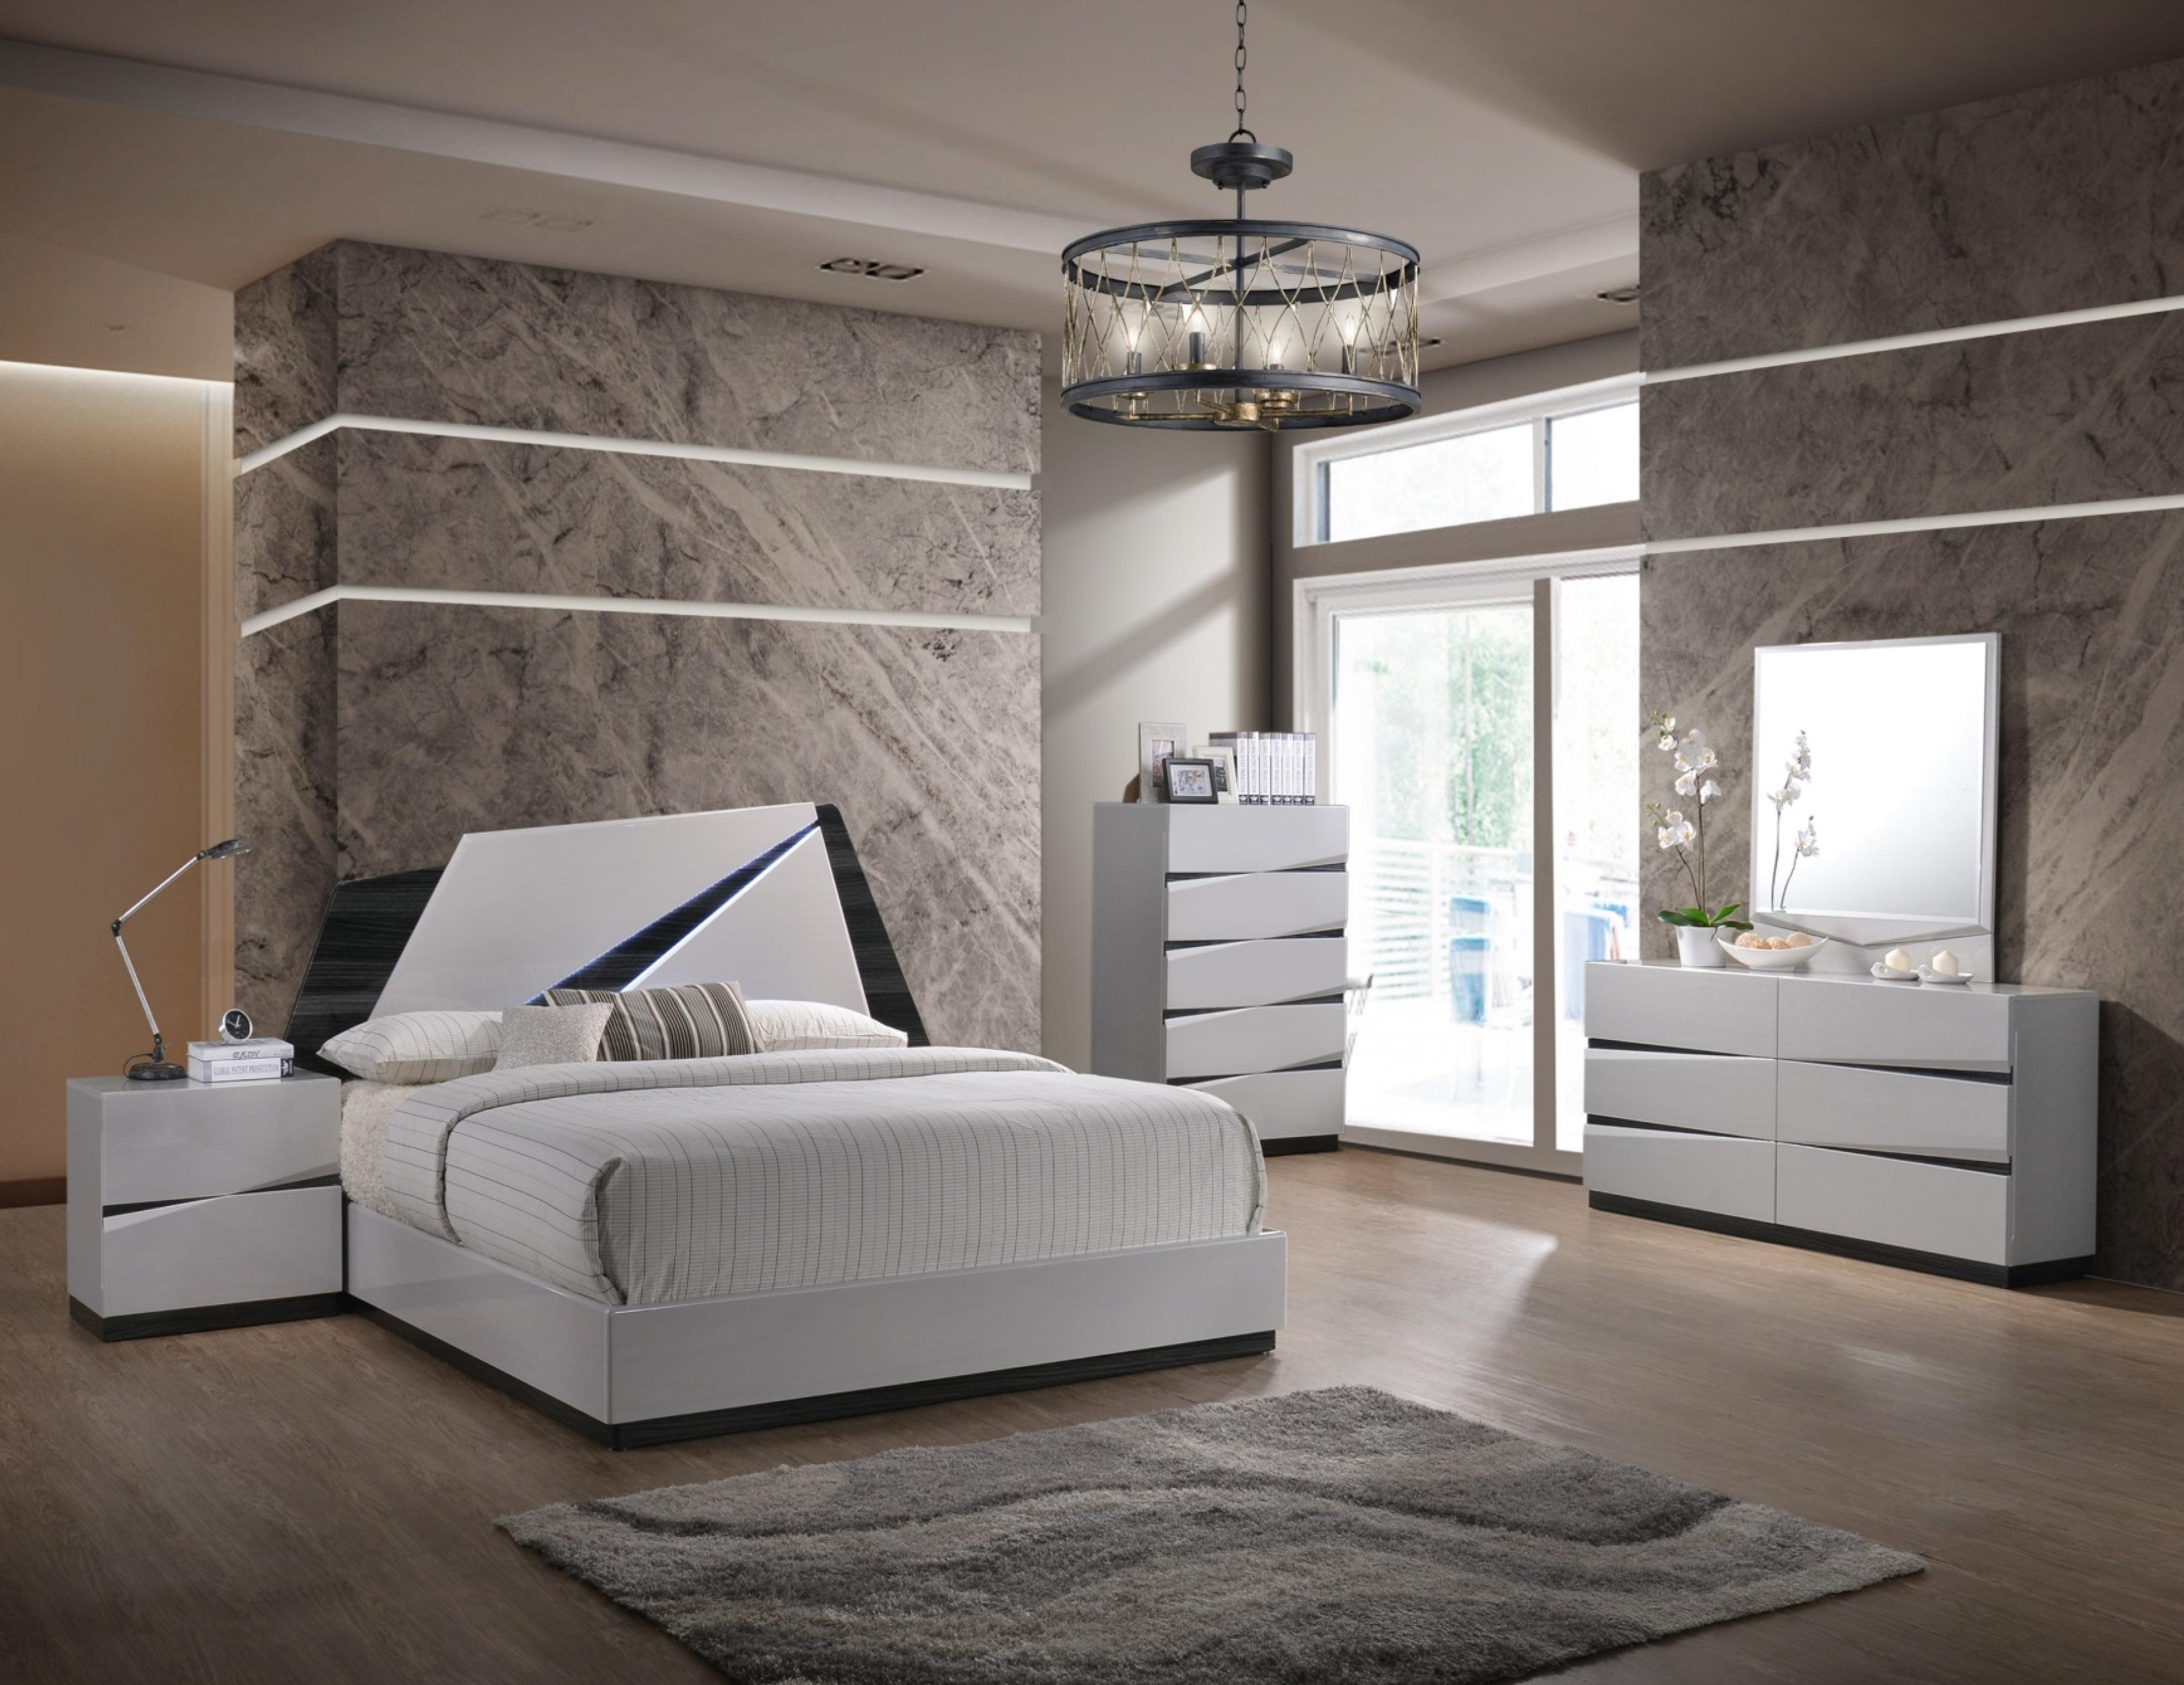 

    
Global Furniture Scarlett Modern White Gloss Finish Queen Bedroom Set 5 Pcs
